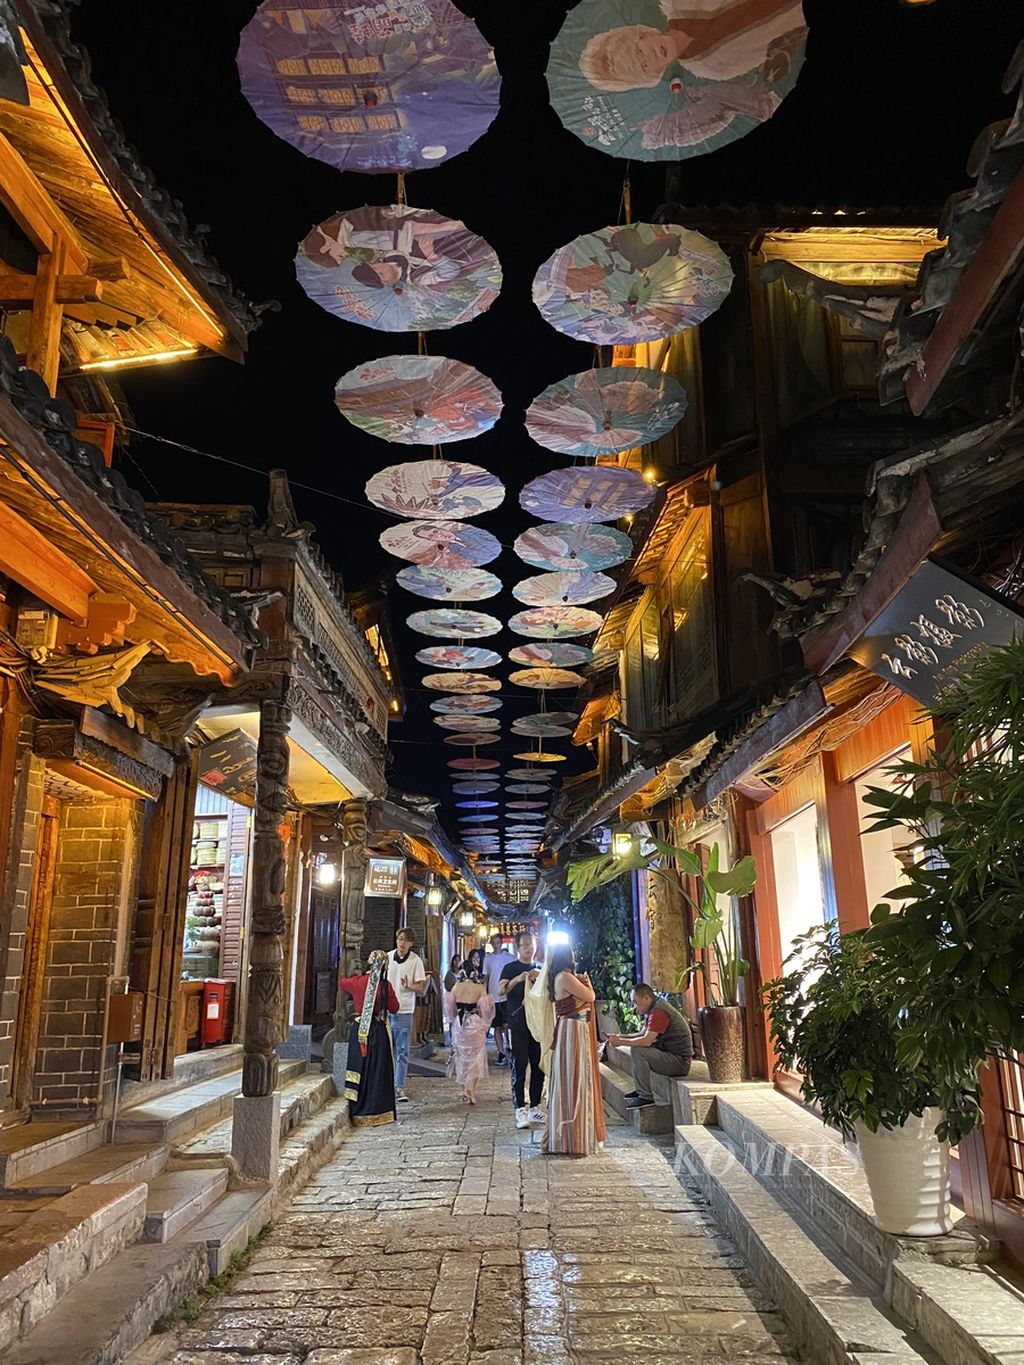 Jajaran kedai di area pasar di kawasan kota tua Lijiang, Yunnan, China.